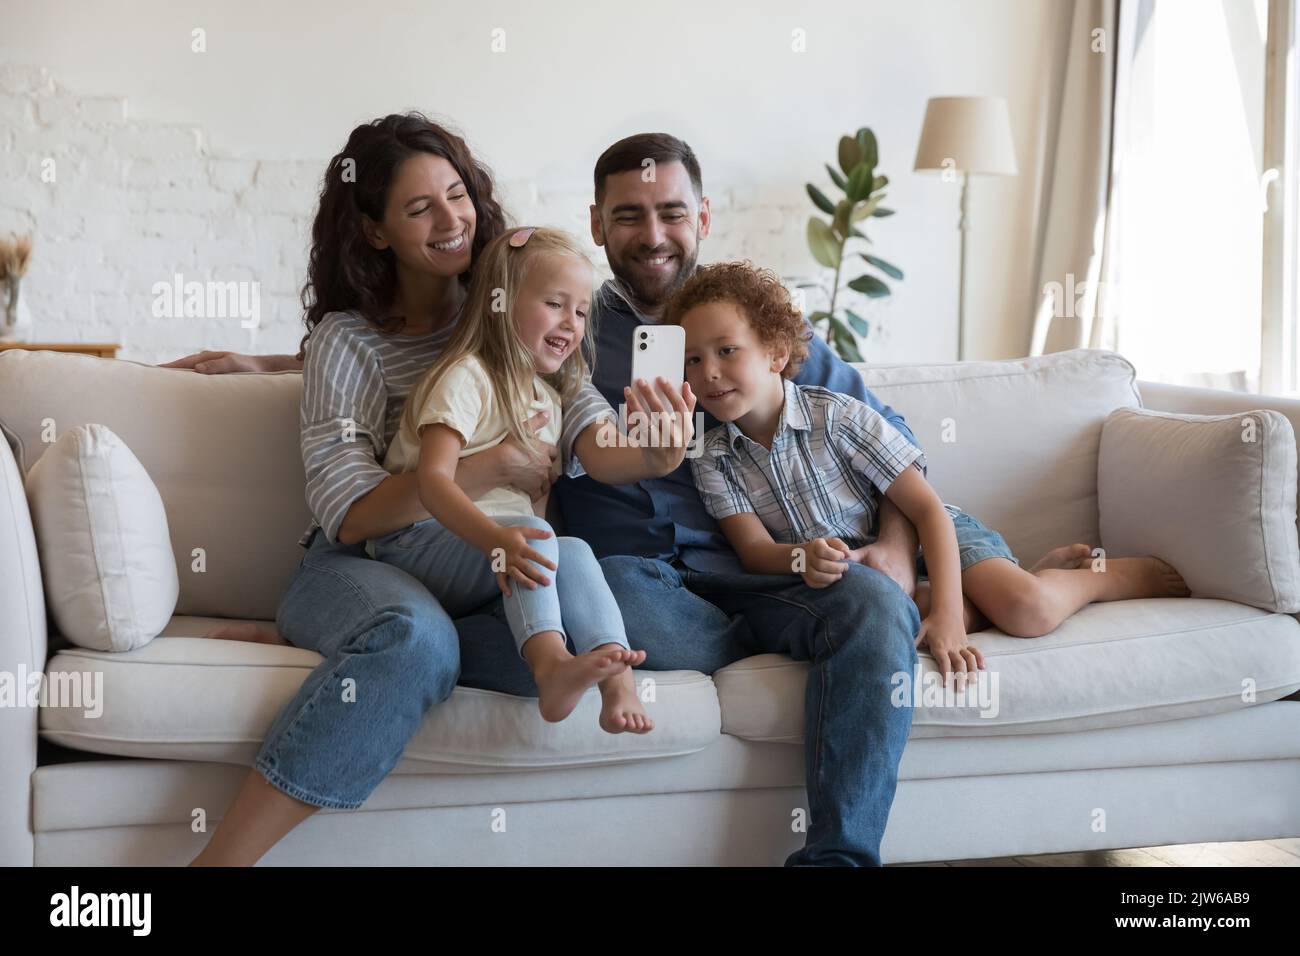 Une famille heureuse avec de petits enfants adorables passe des vacances à l'aide d'un smartphone Banque D'Images